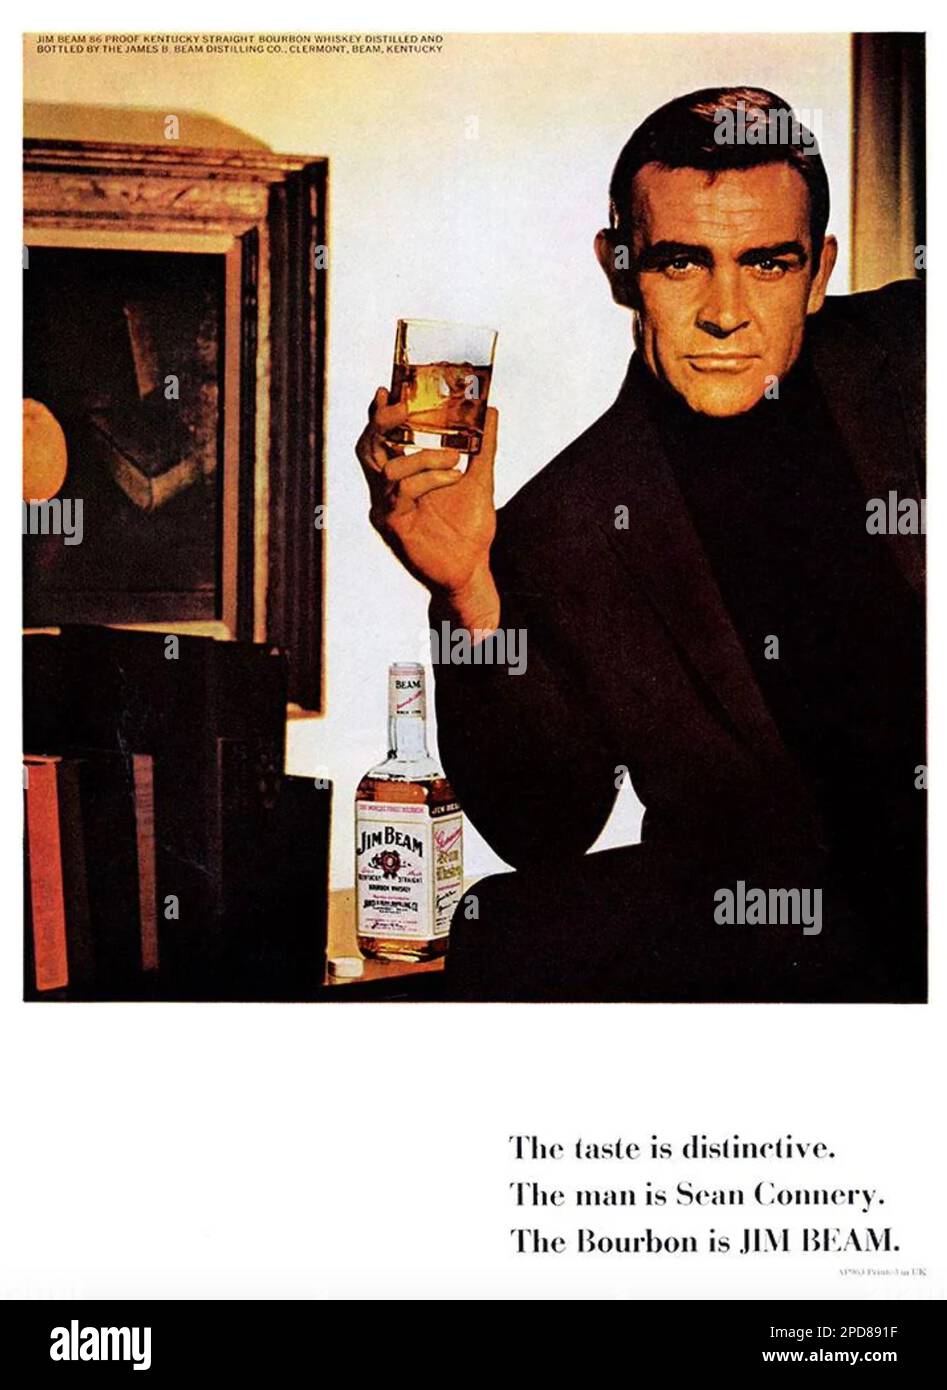 JIM BEAMEN amerikanische Whisky-Werbung mit Sean Connery um 1966 Uhr Stockfoto